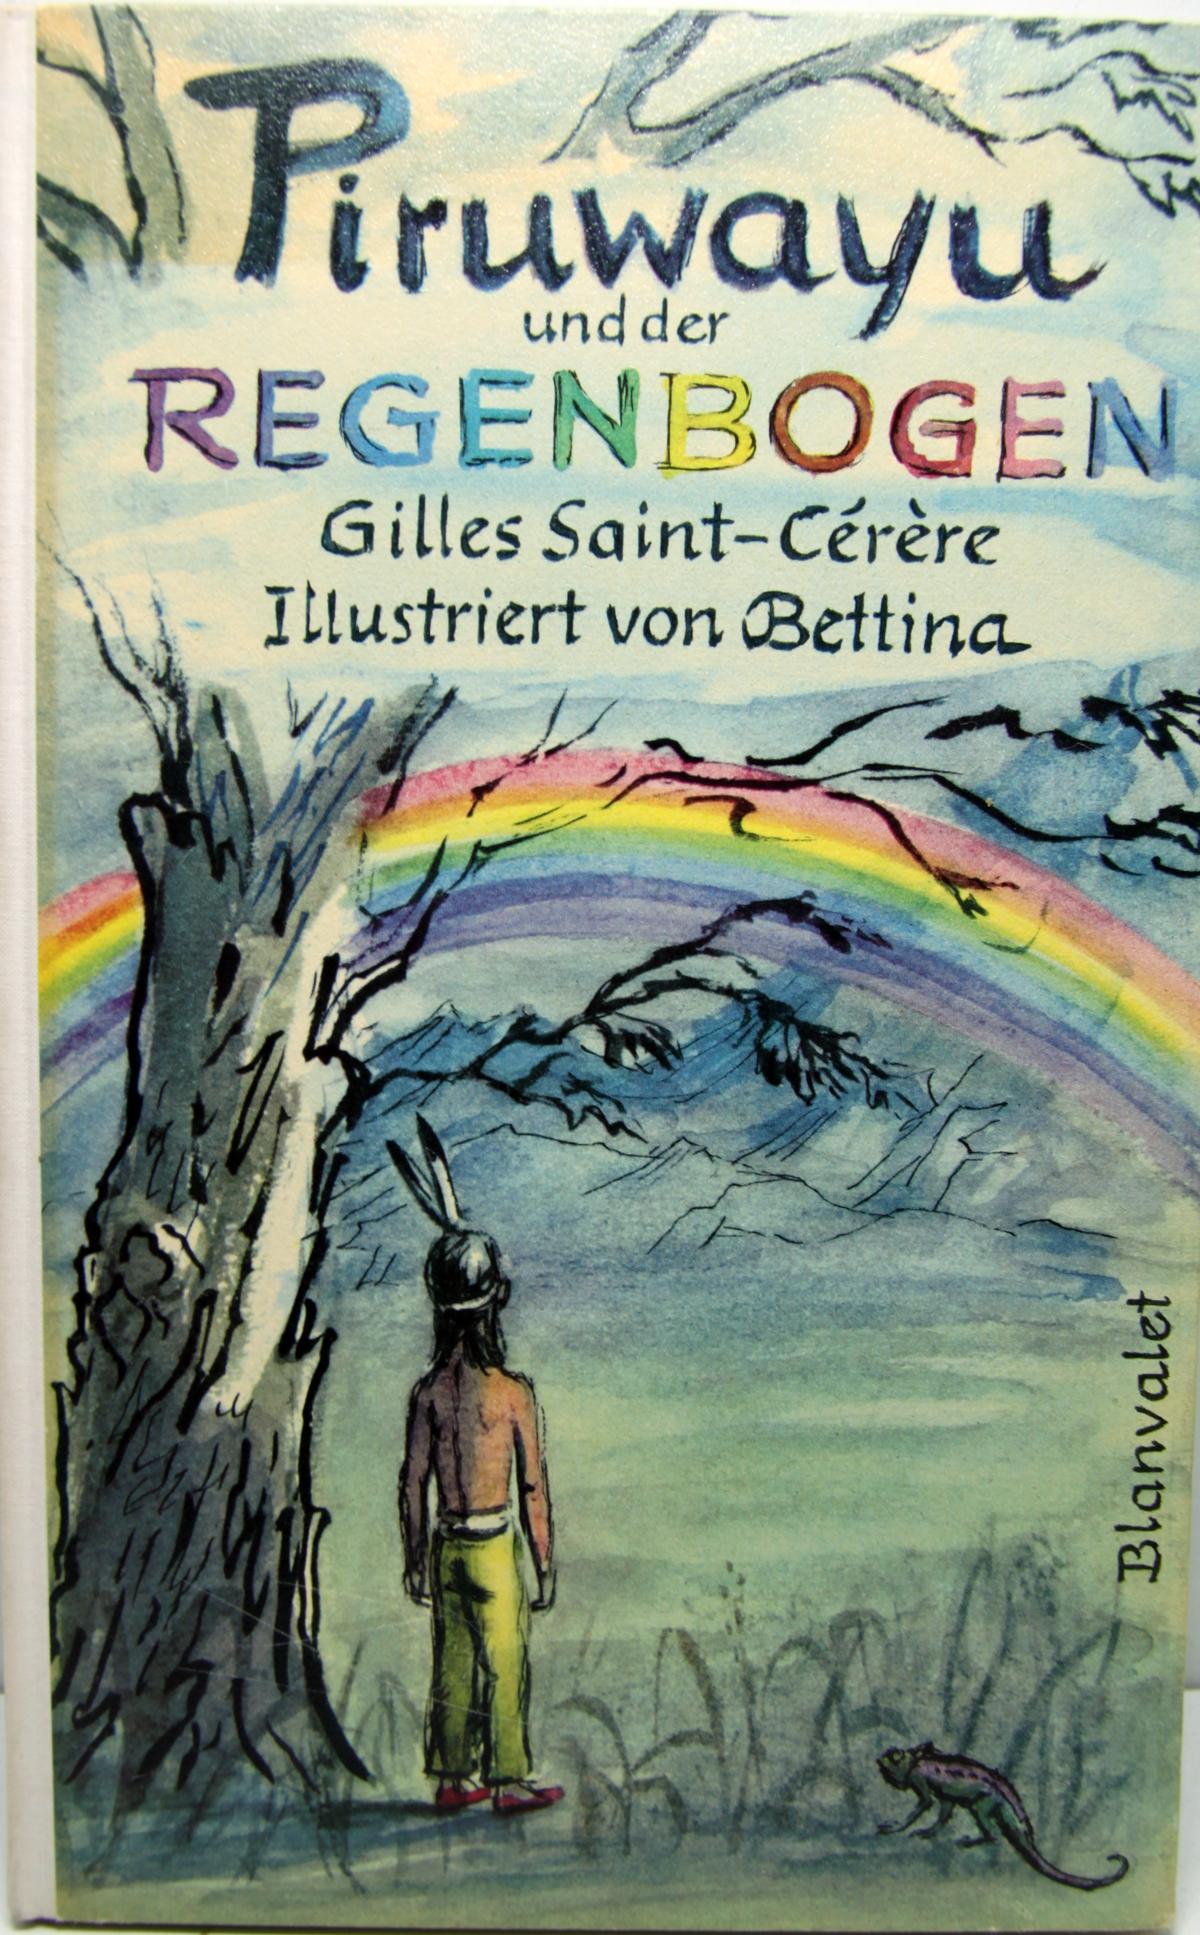 Buch "Piruwayu und der Regenbogen" Gilles Saint-Cerere